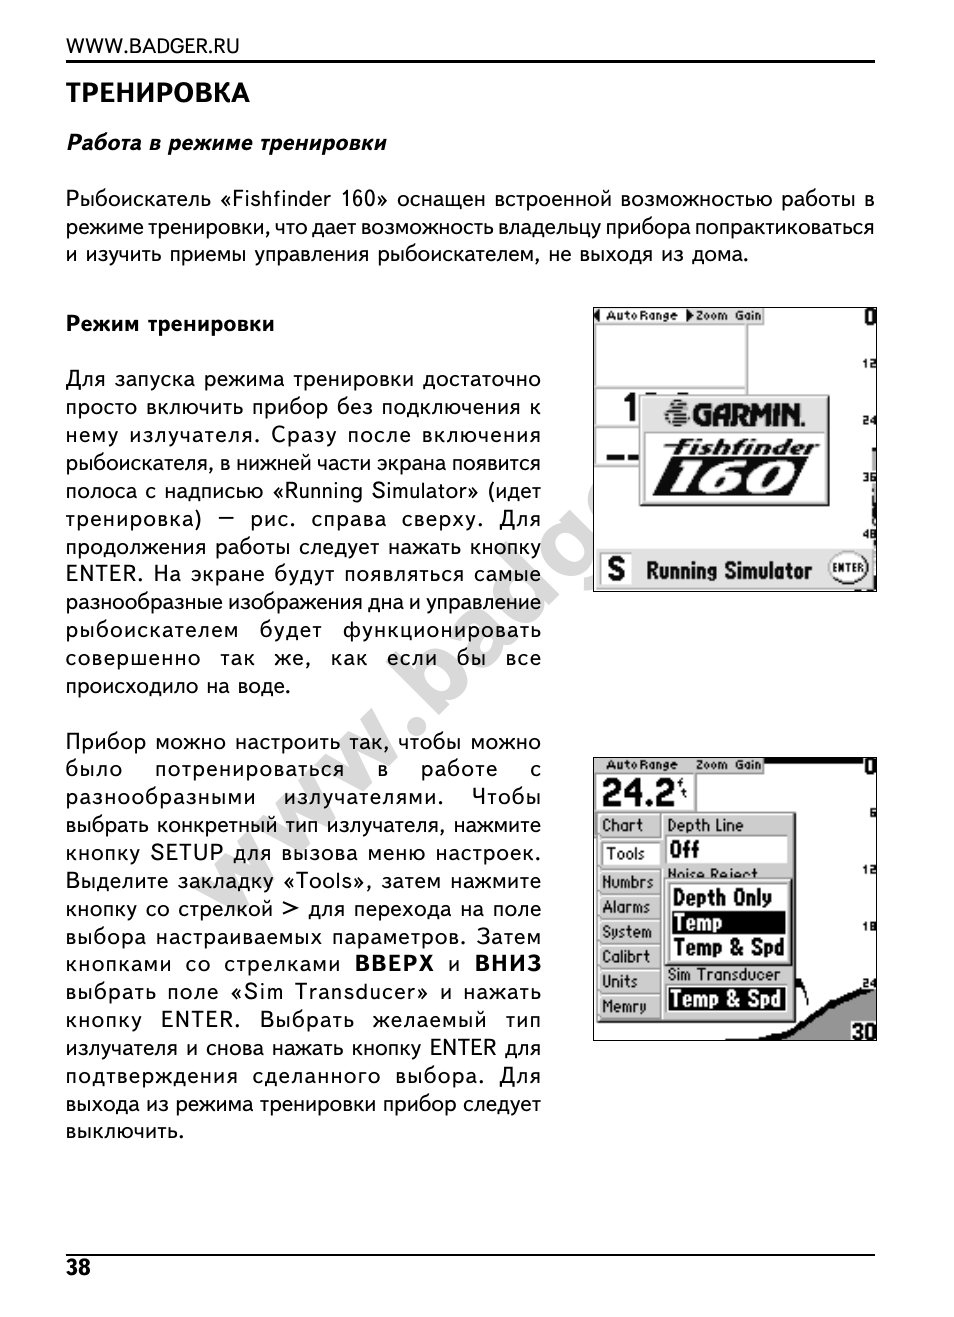 Инструкция по эксплуатации Garmin Fishfinder 160 | Страница 40 / 45